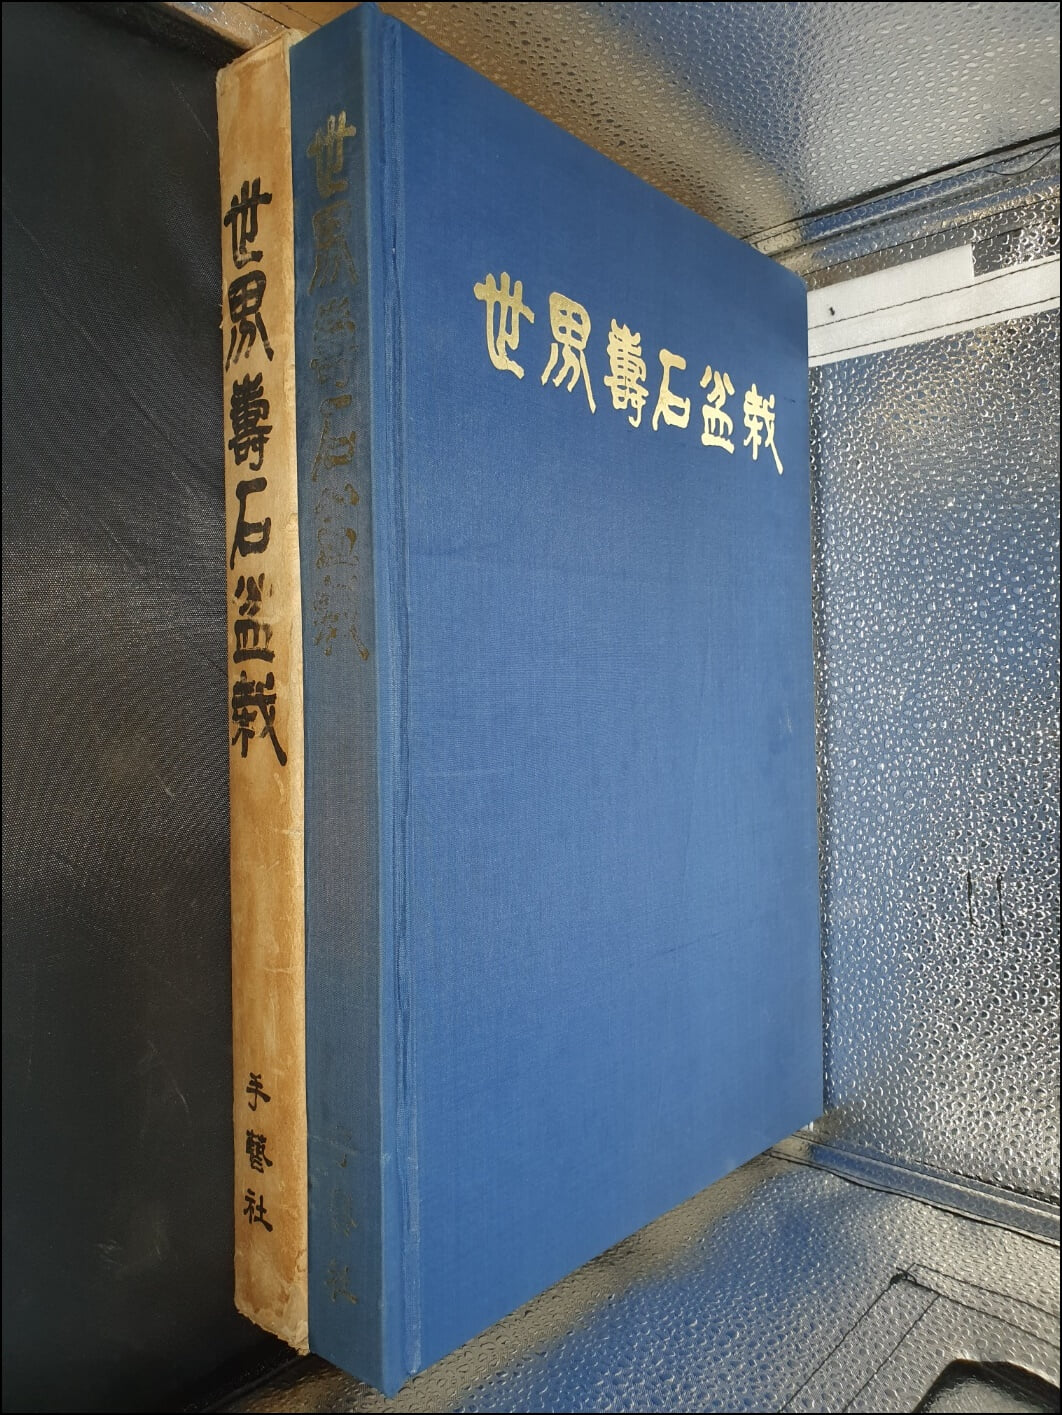 세계수석분재(世界壽石盆栽)(큰책/하드커버)(1983년)